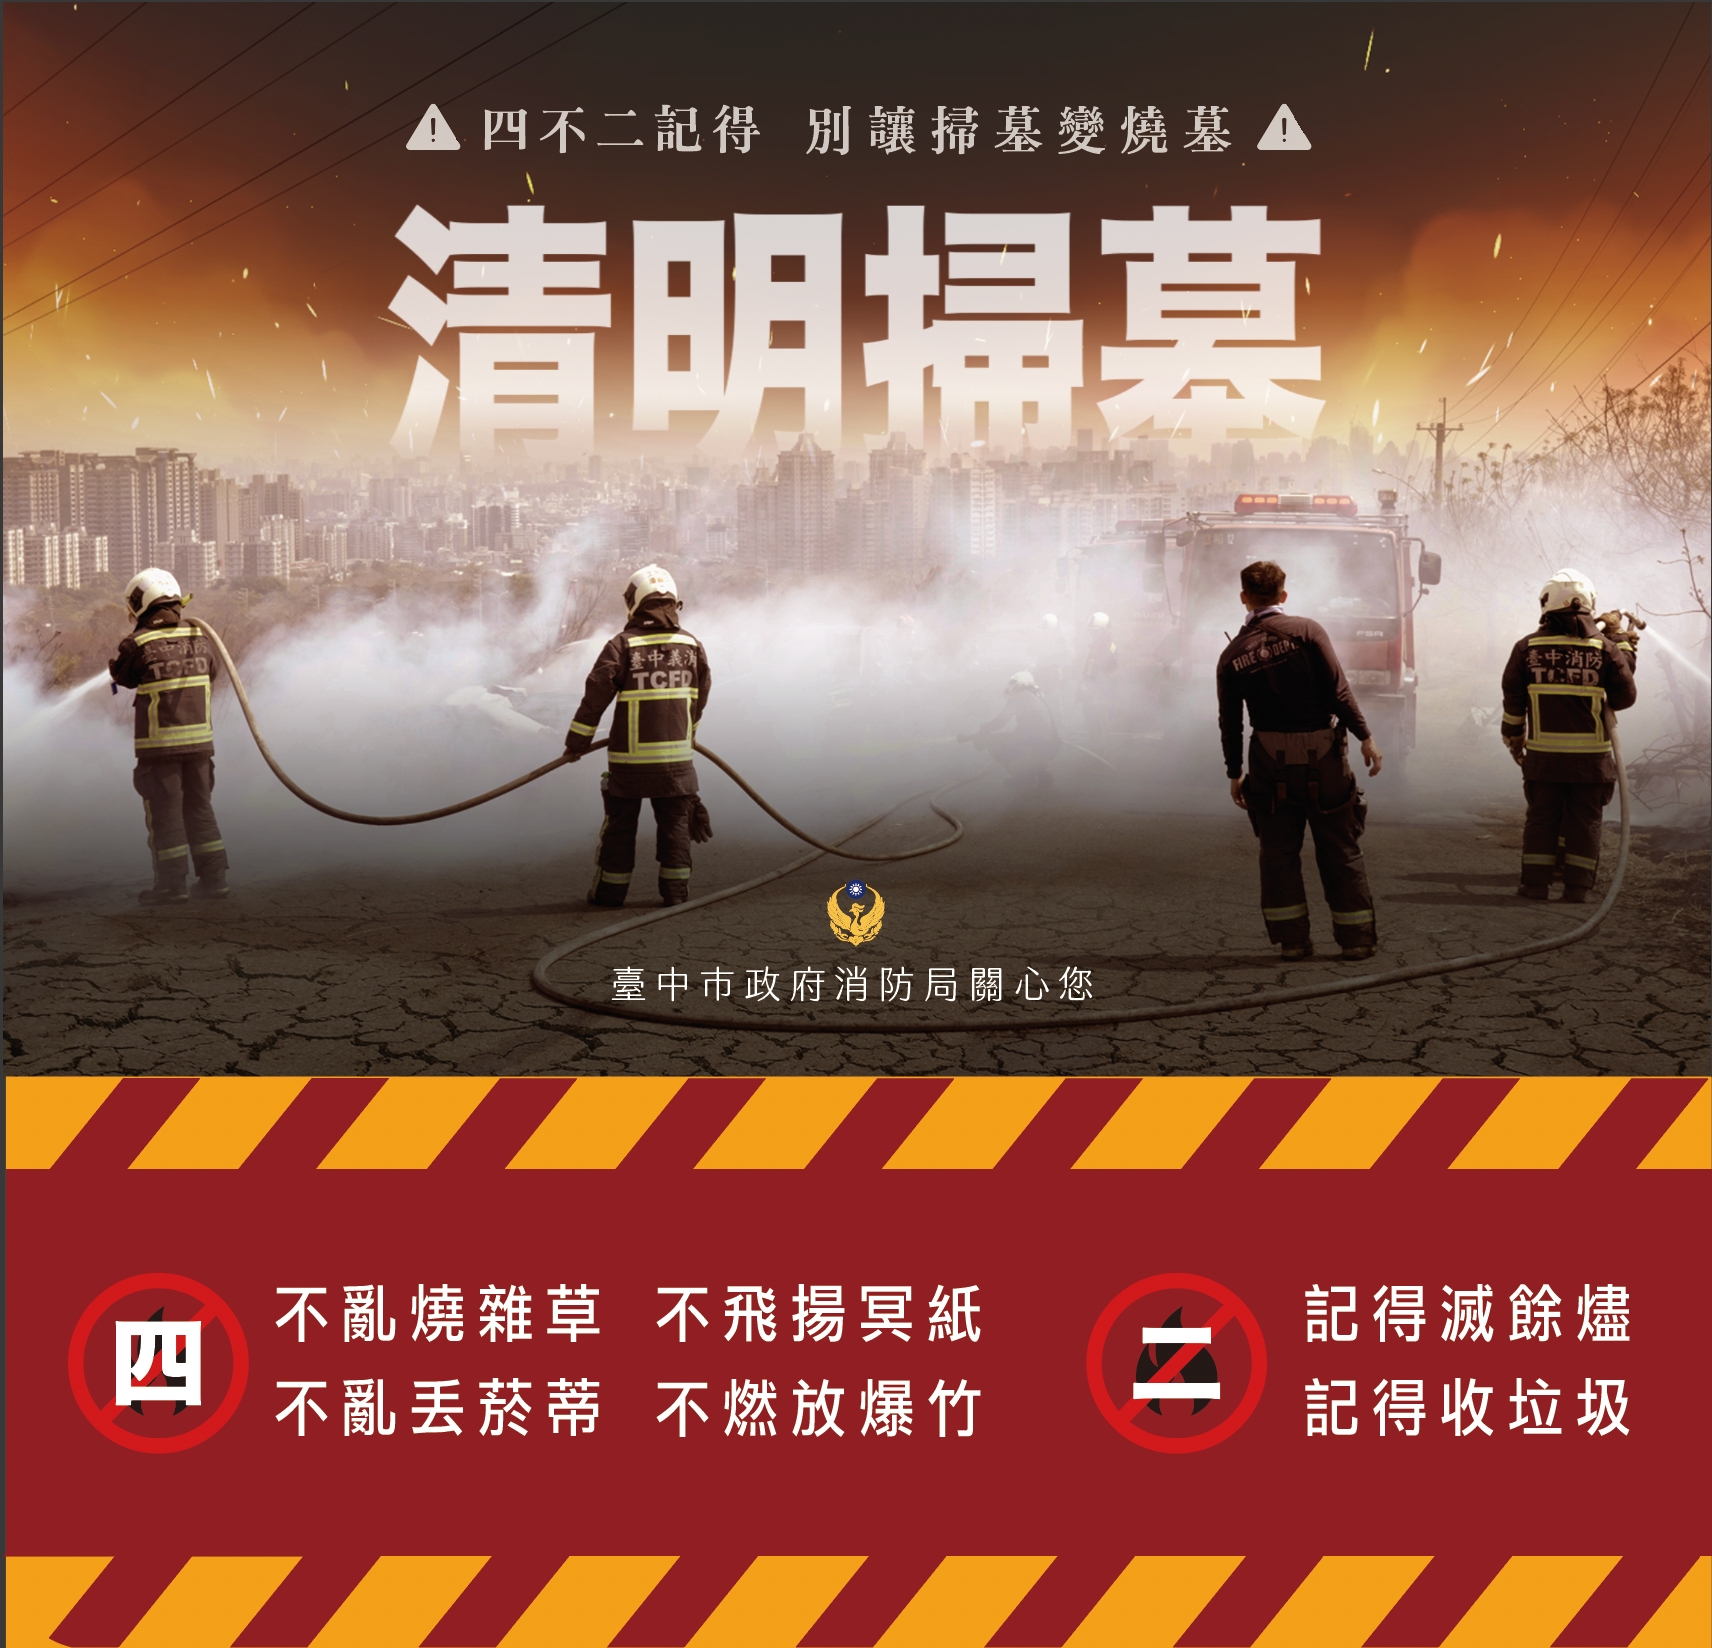 中市府、消防局提醒清明祭掃墓「4不2記得」避免火災風險